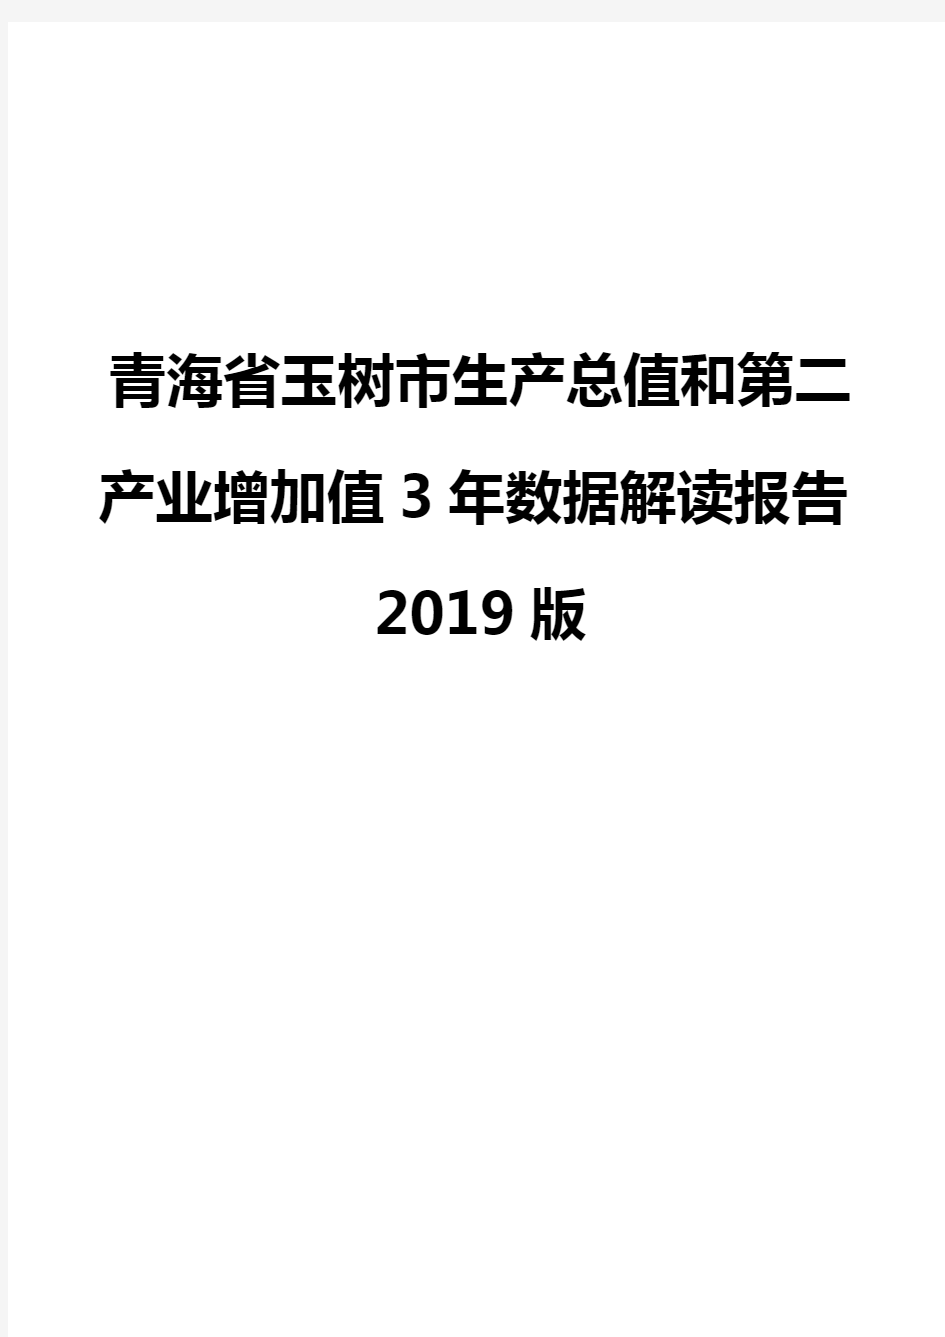 青海省玉树市生产总值和第二产业增加值3年数据解读报告2019版